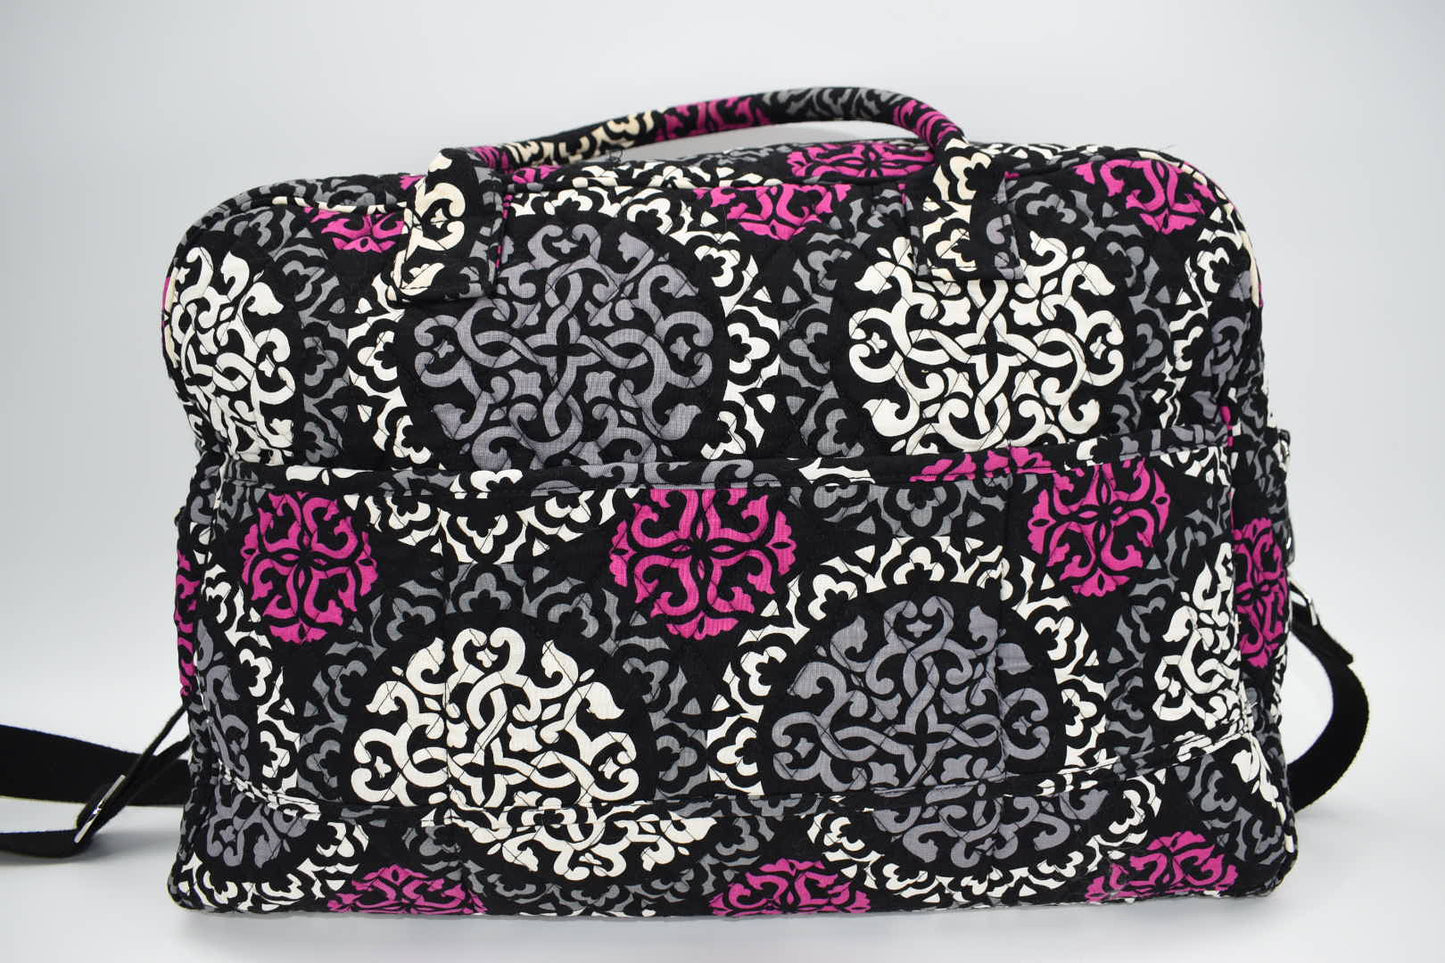 Vera Bradley Weekender Travel Bag in Canterberry Magenta Pattern